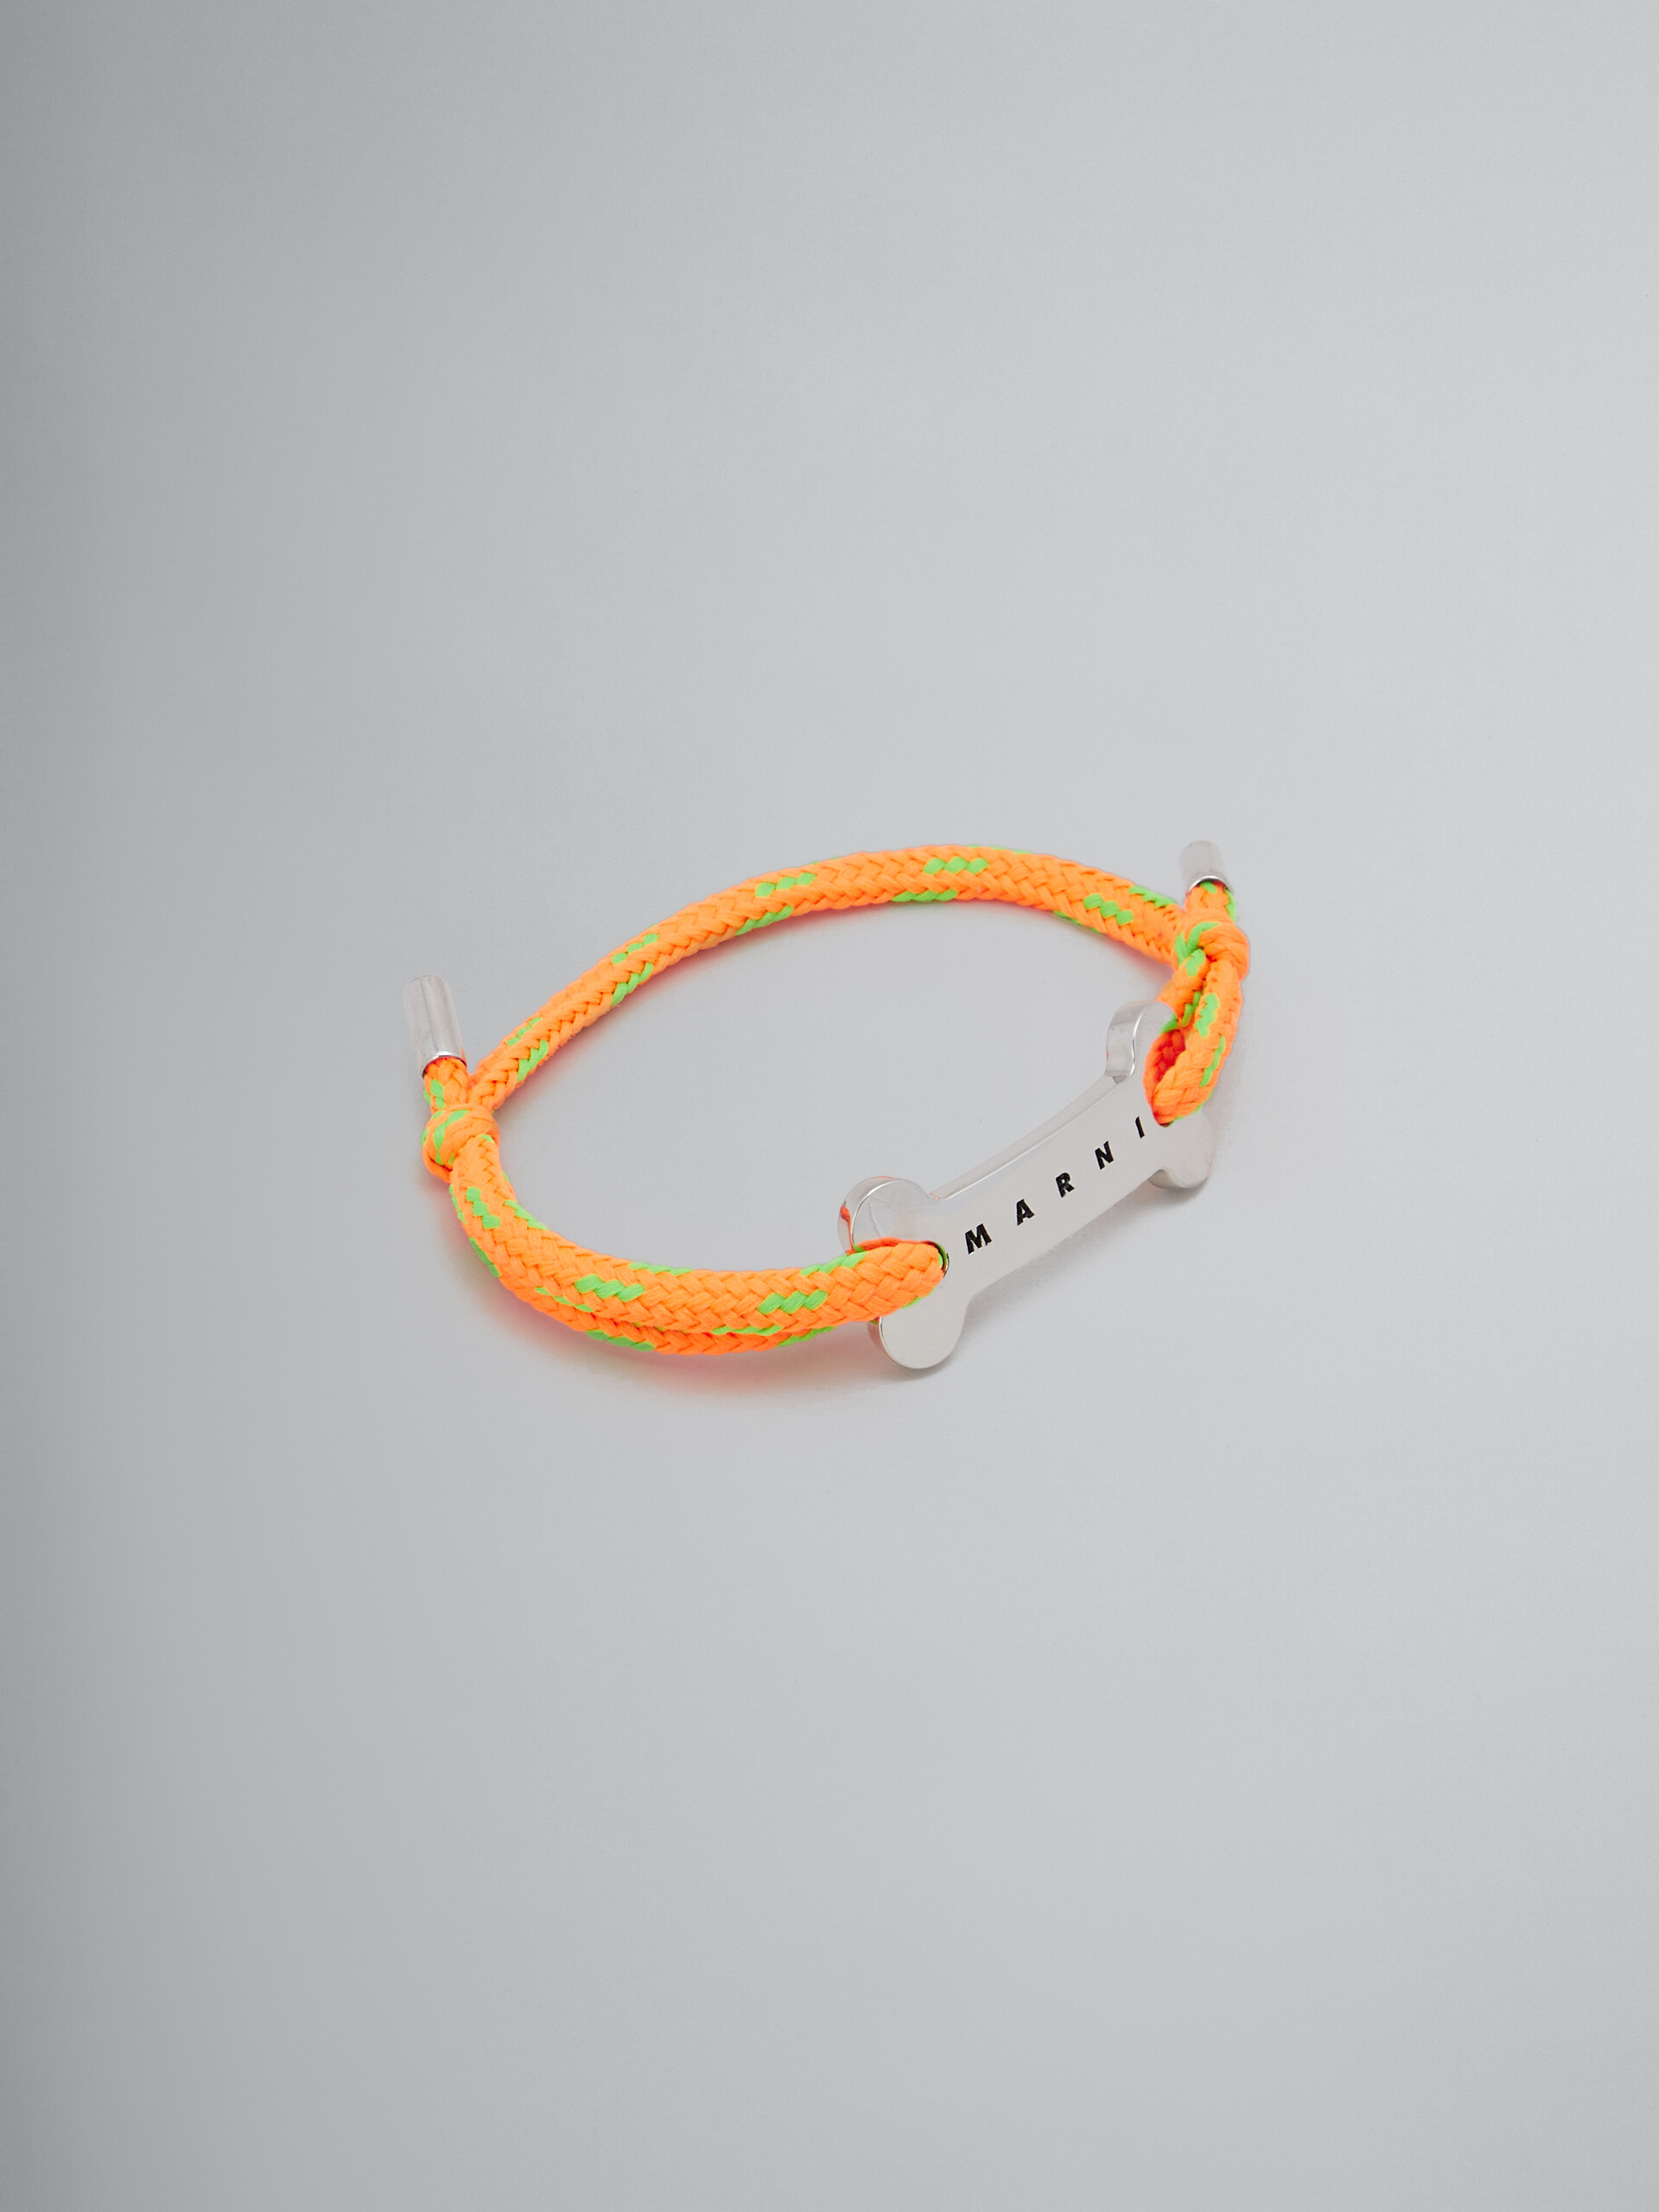 Blaues Schnürsenkel-Armband mit Knochen-Plakette - Armbänder - Image 1